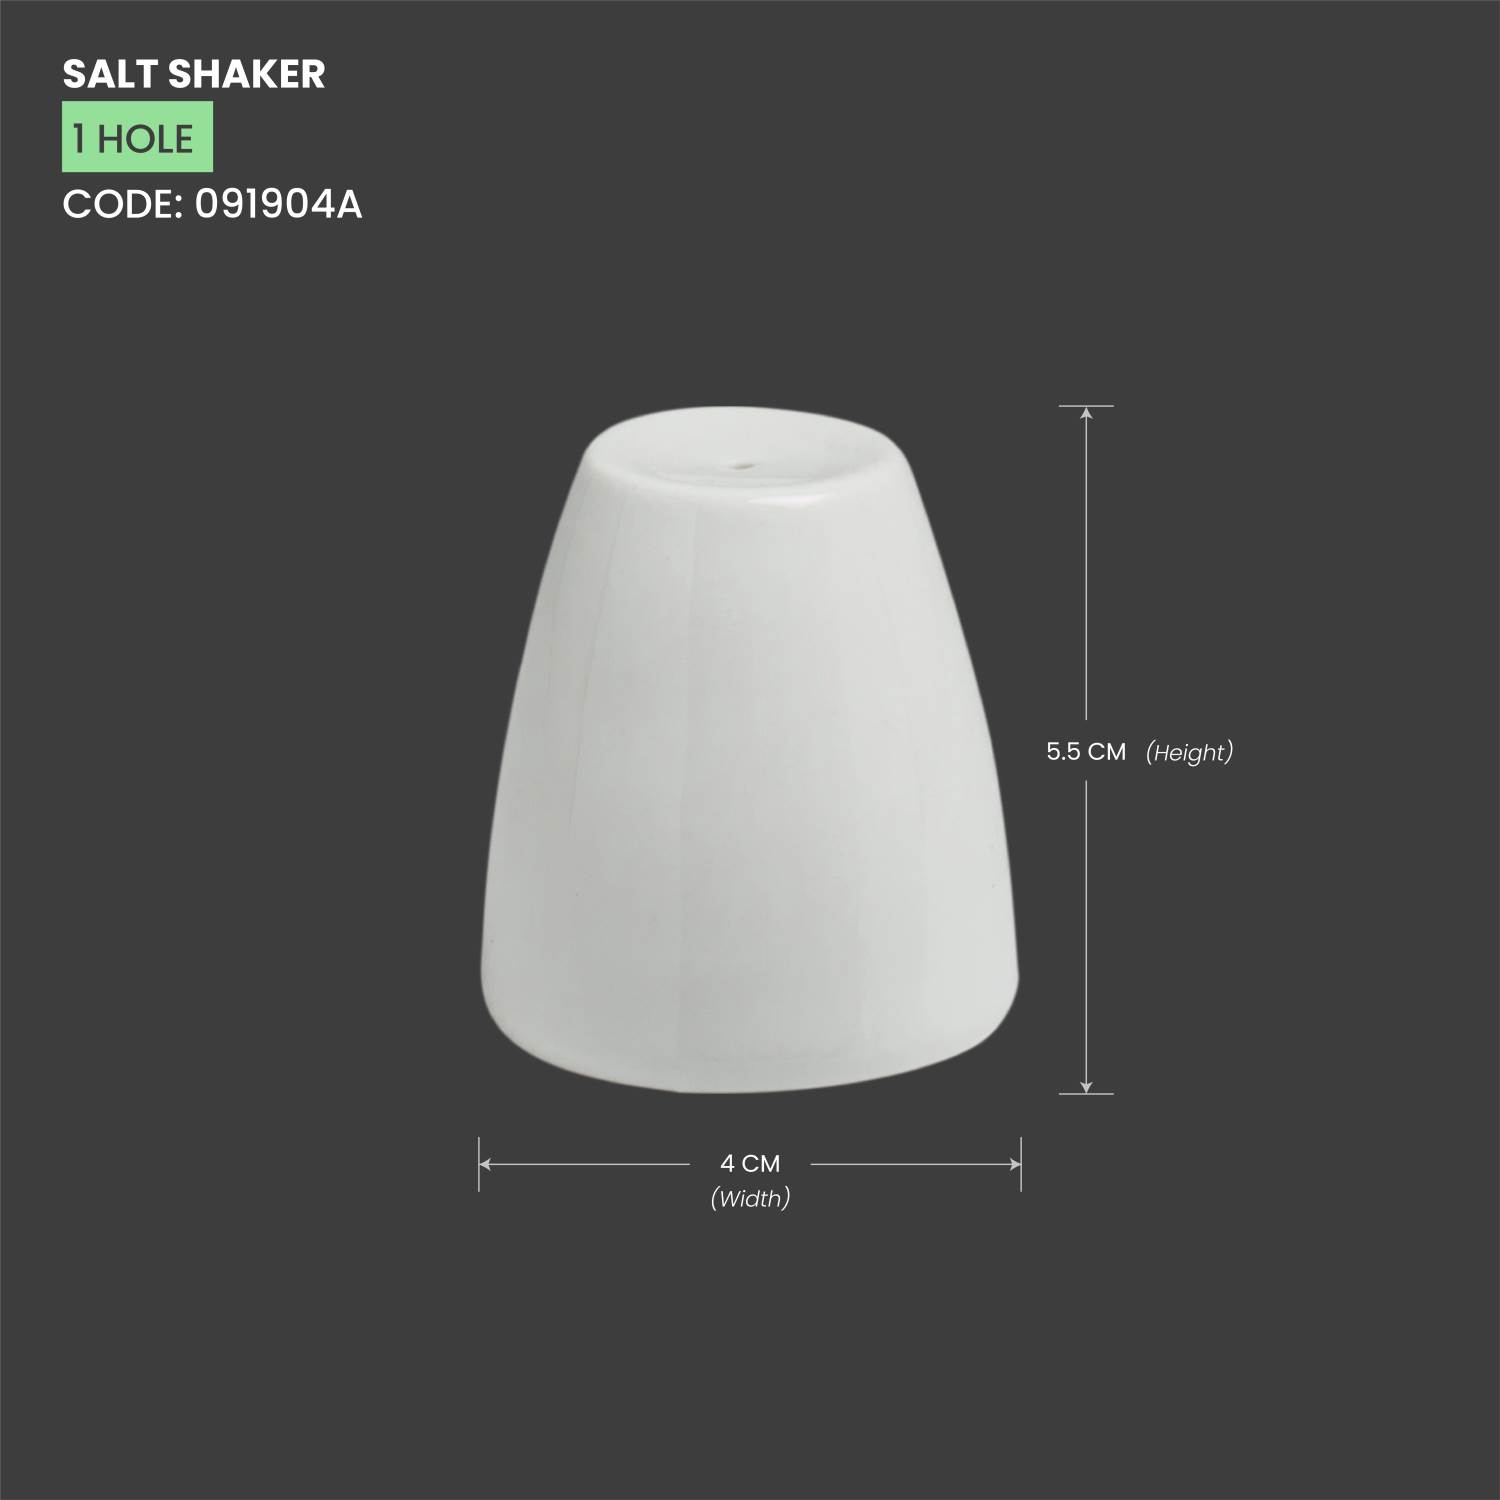 Baralee Simple Plus Salt Shaker (1 Hole)